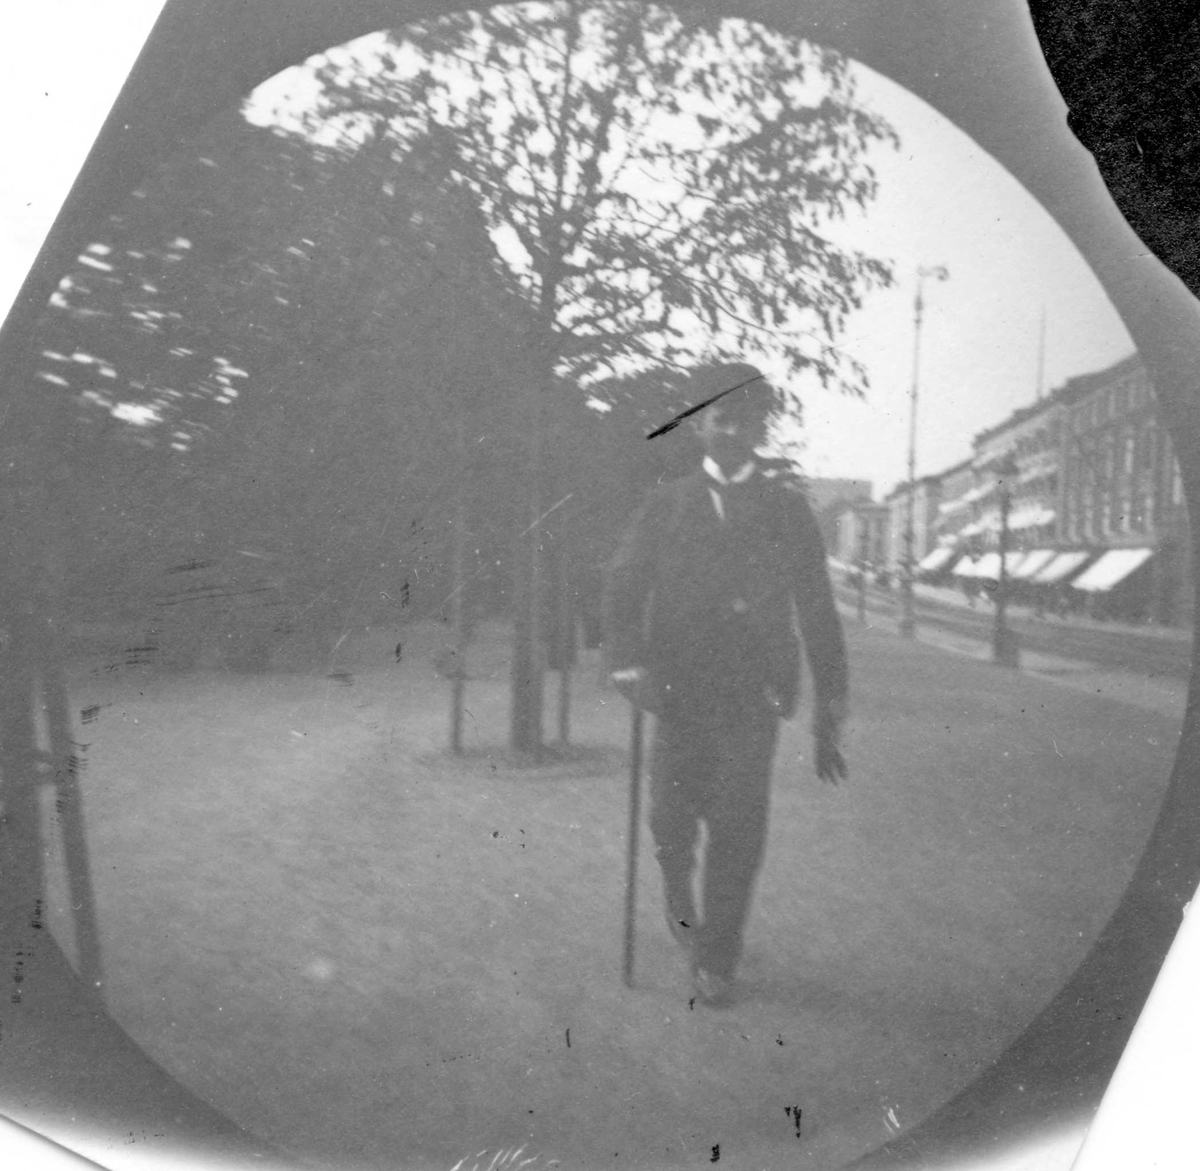 Mann spaserer langs Karl Johans gate, Oslo. Muligens konsul Coates.